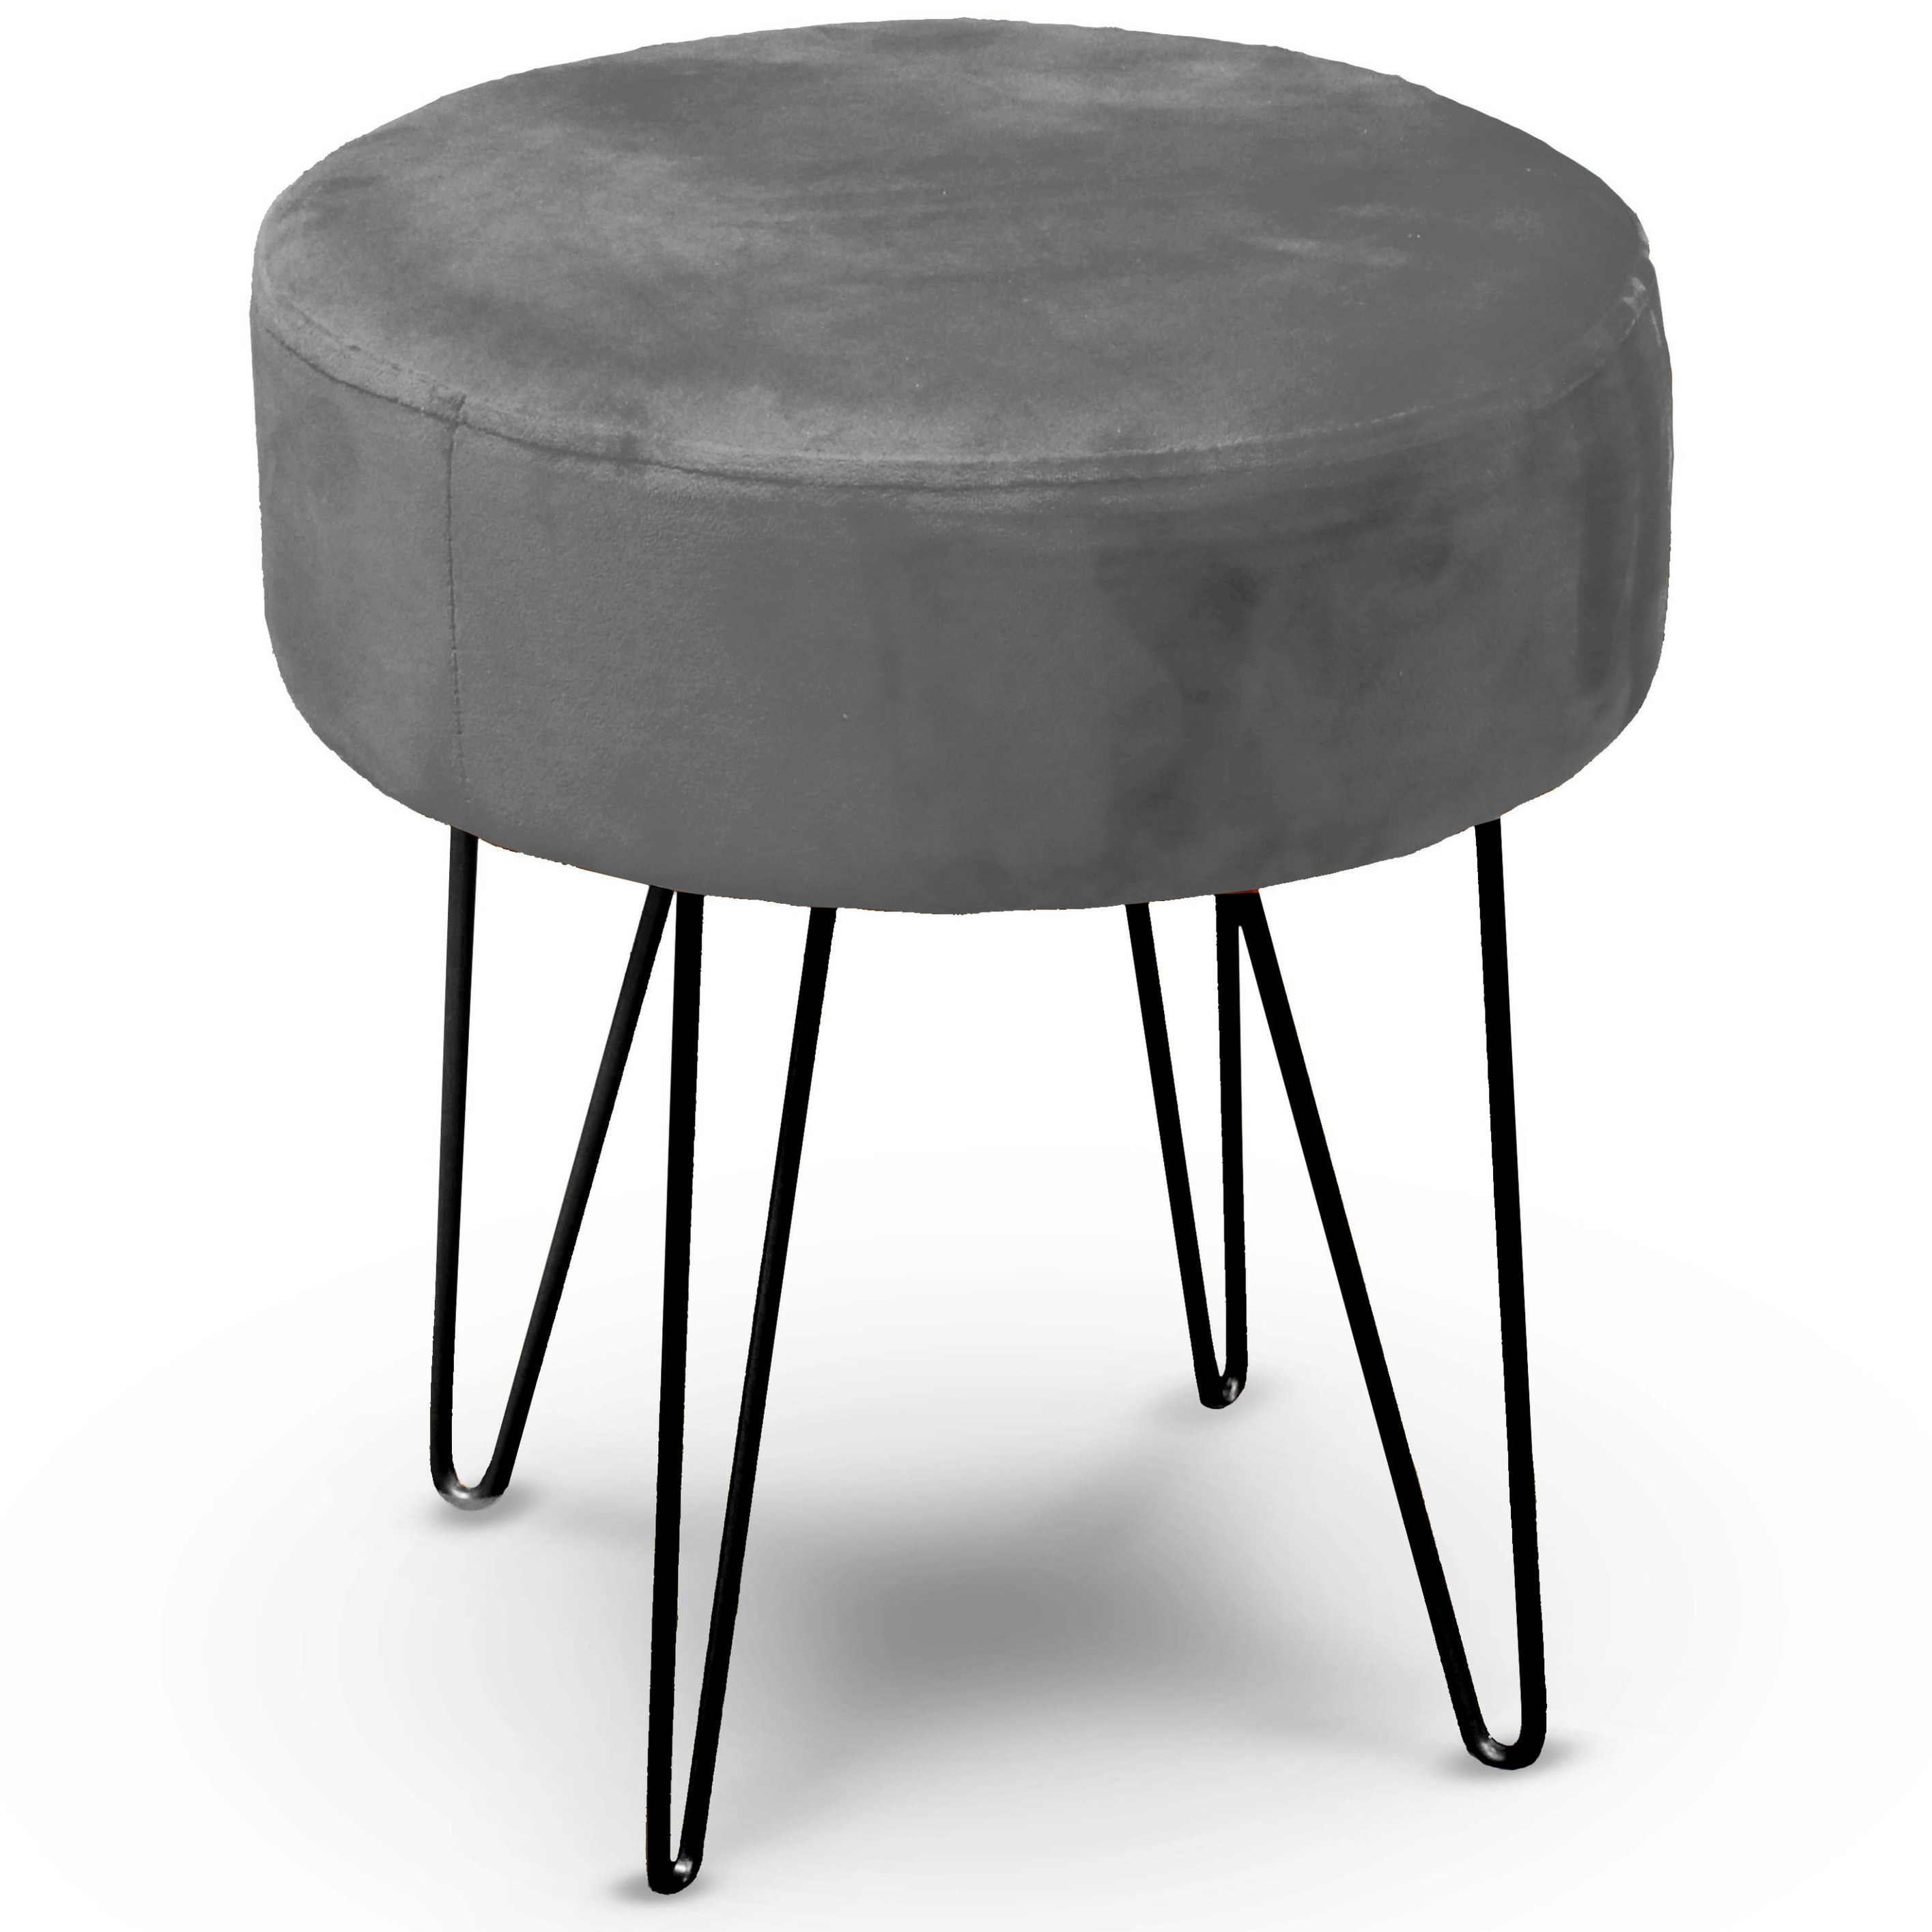 Velvet kruk Davy grijs metaal-stof D35 x H40 cm bijzet stoeltjes